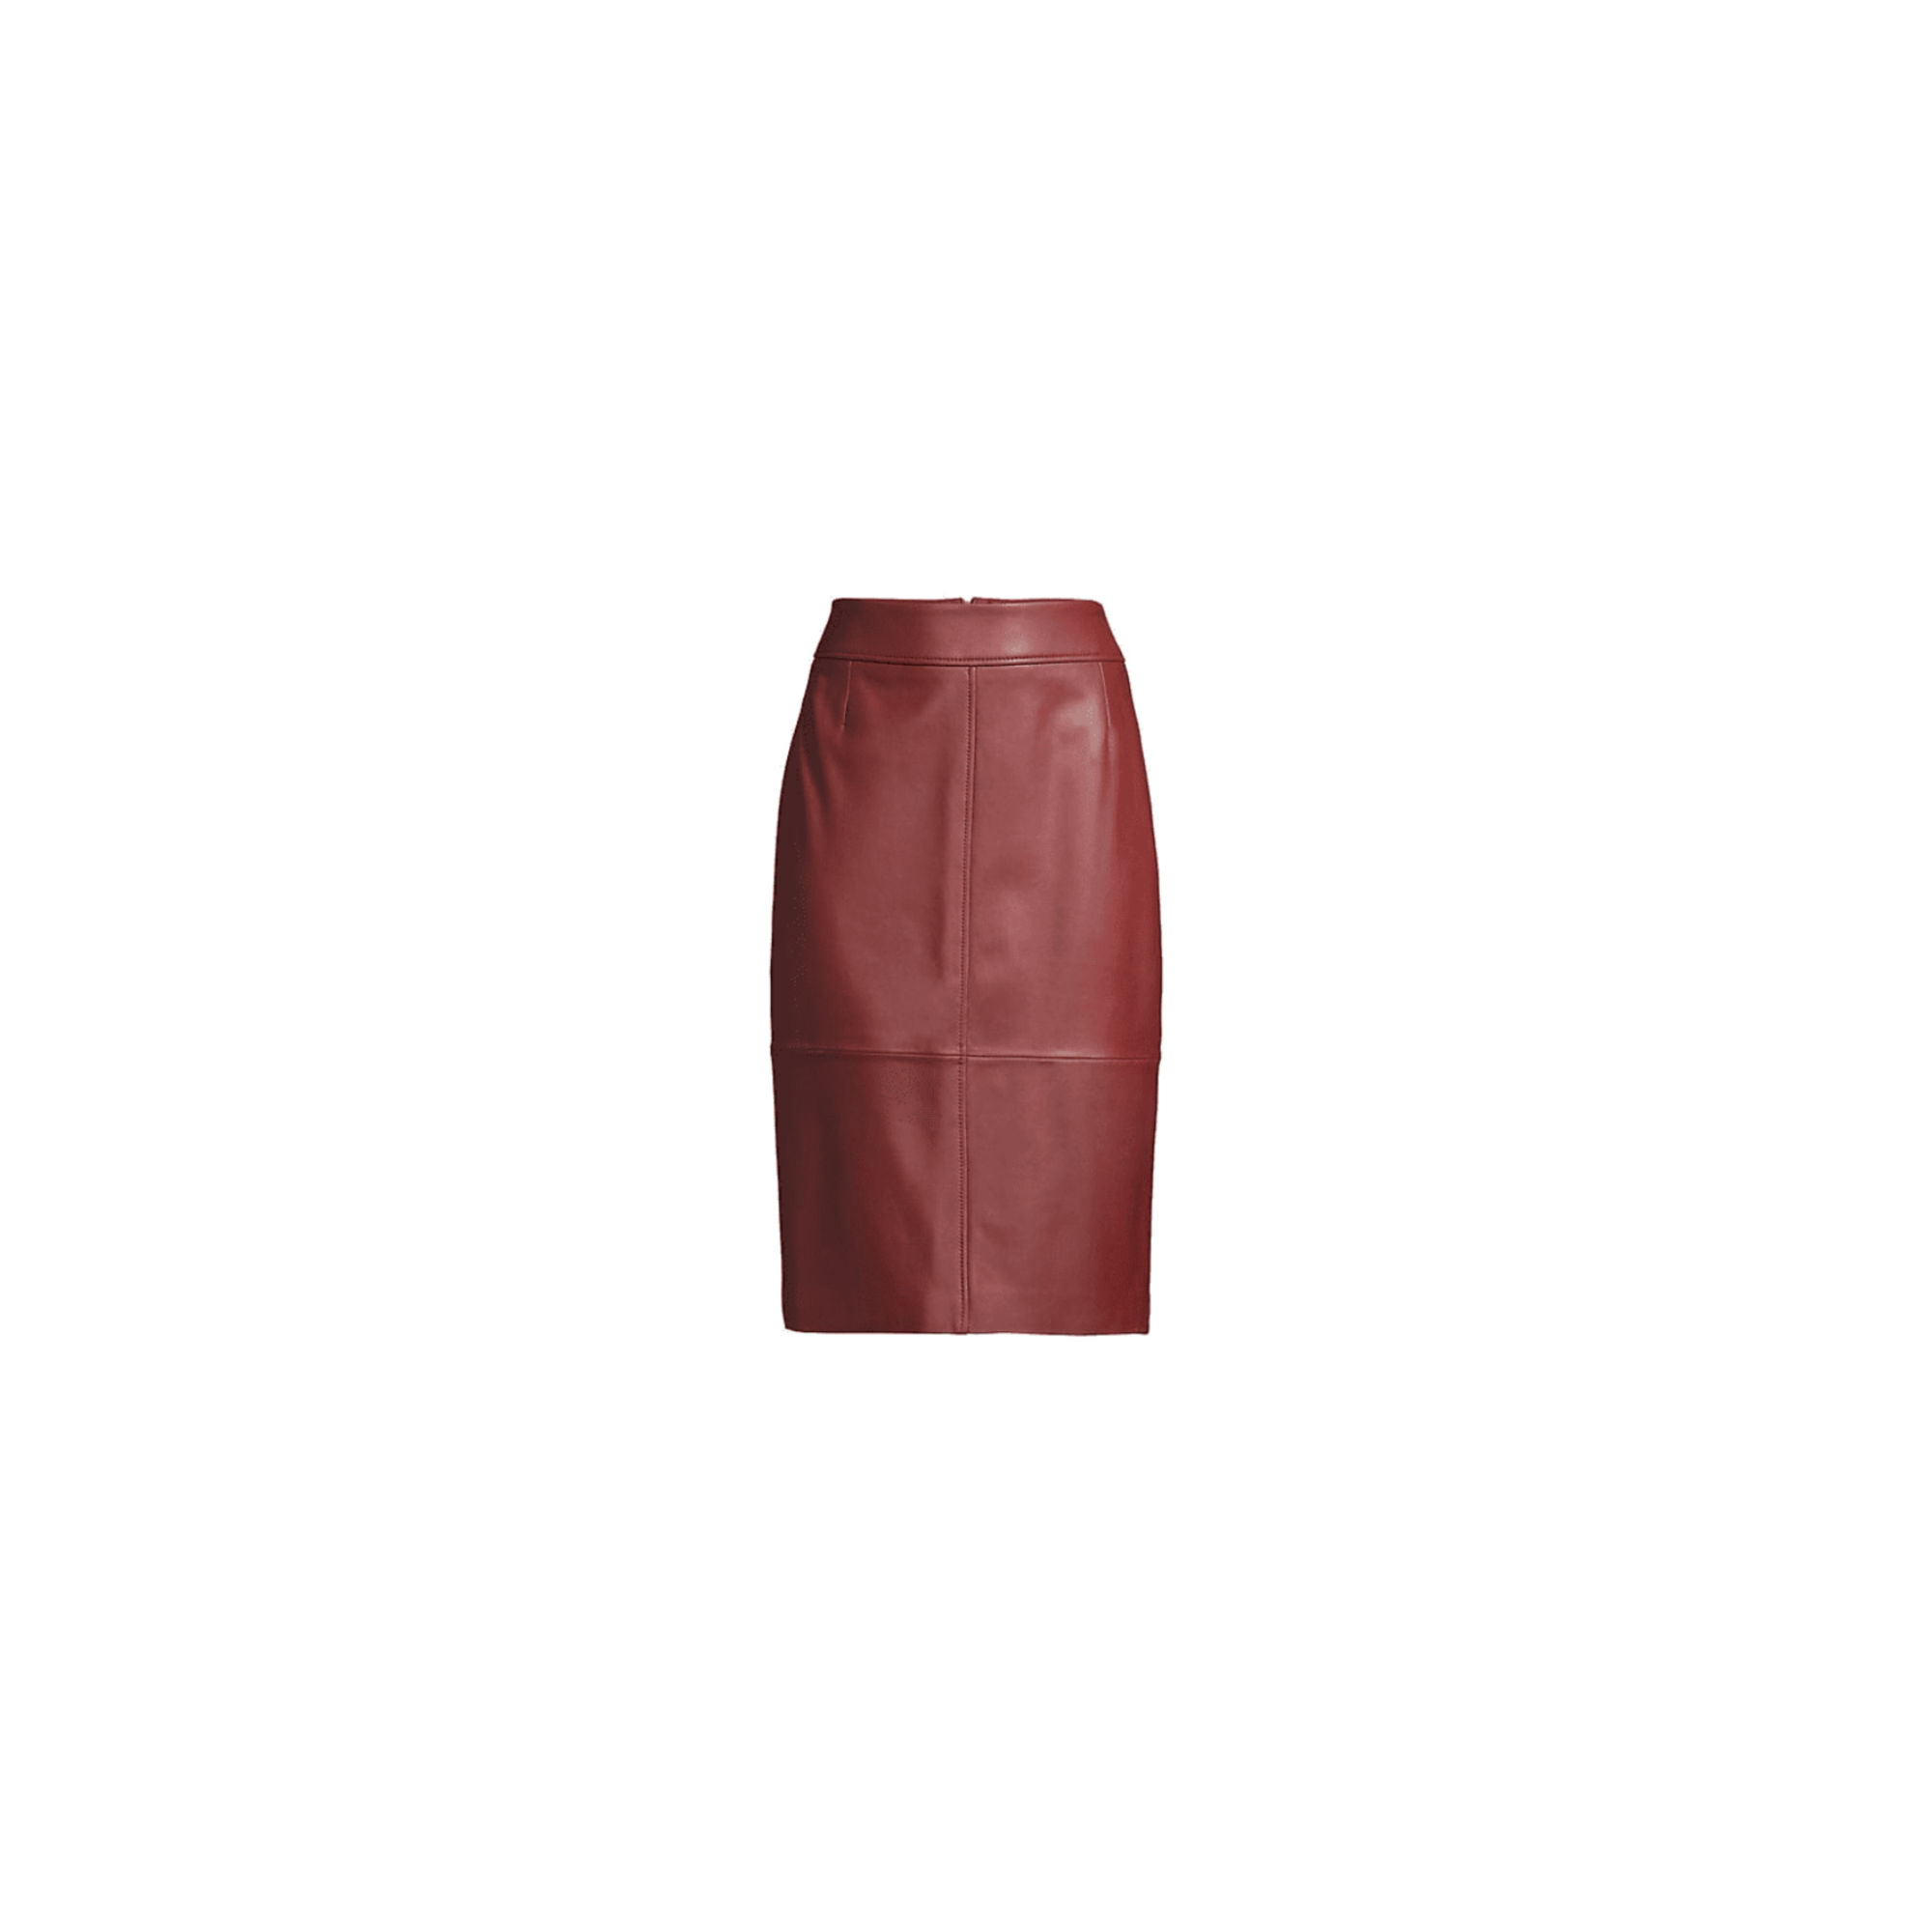 pink leather skirt yoga pants